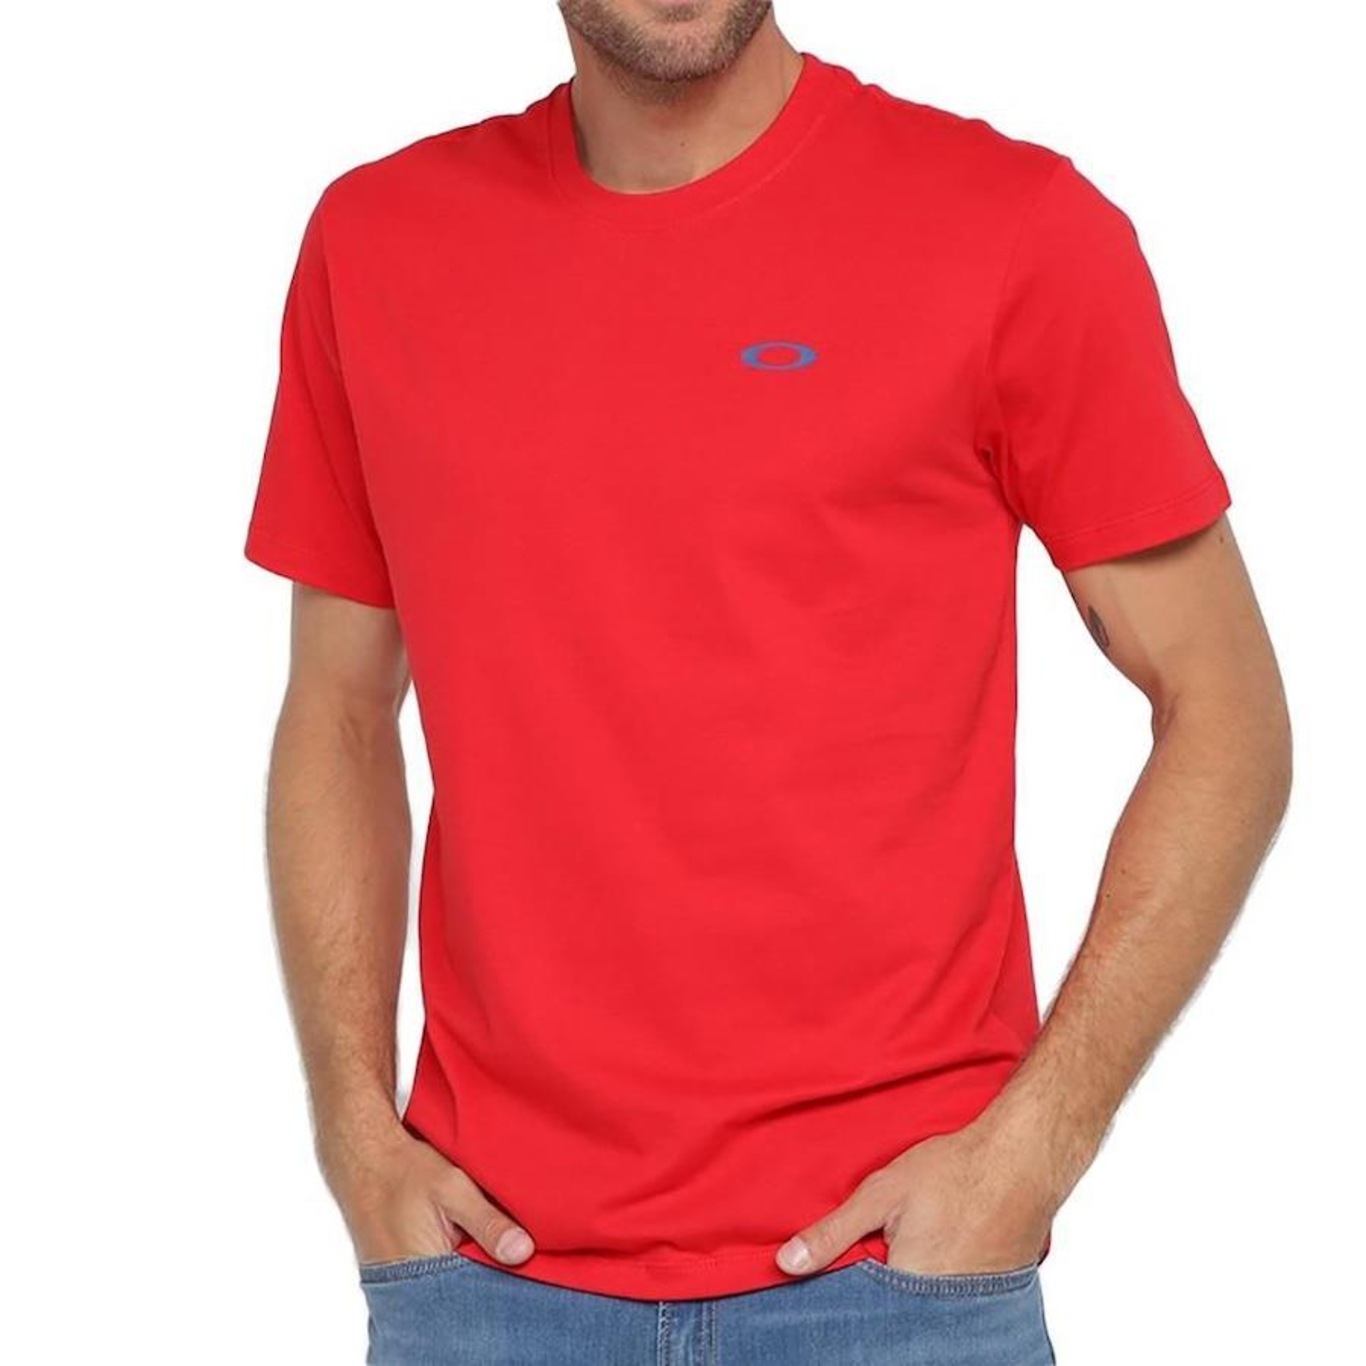 Preços baixos em Camisetas Oakley Vermelho para Homens